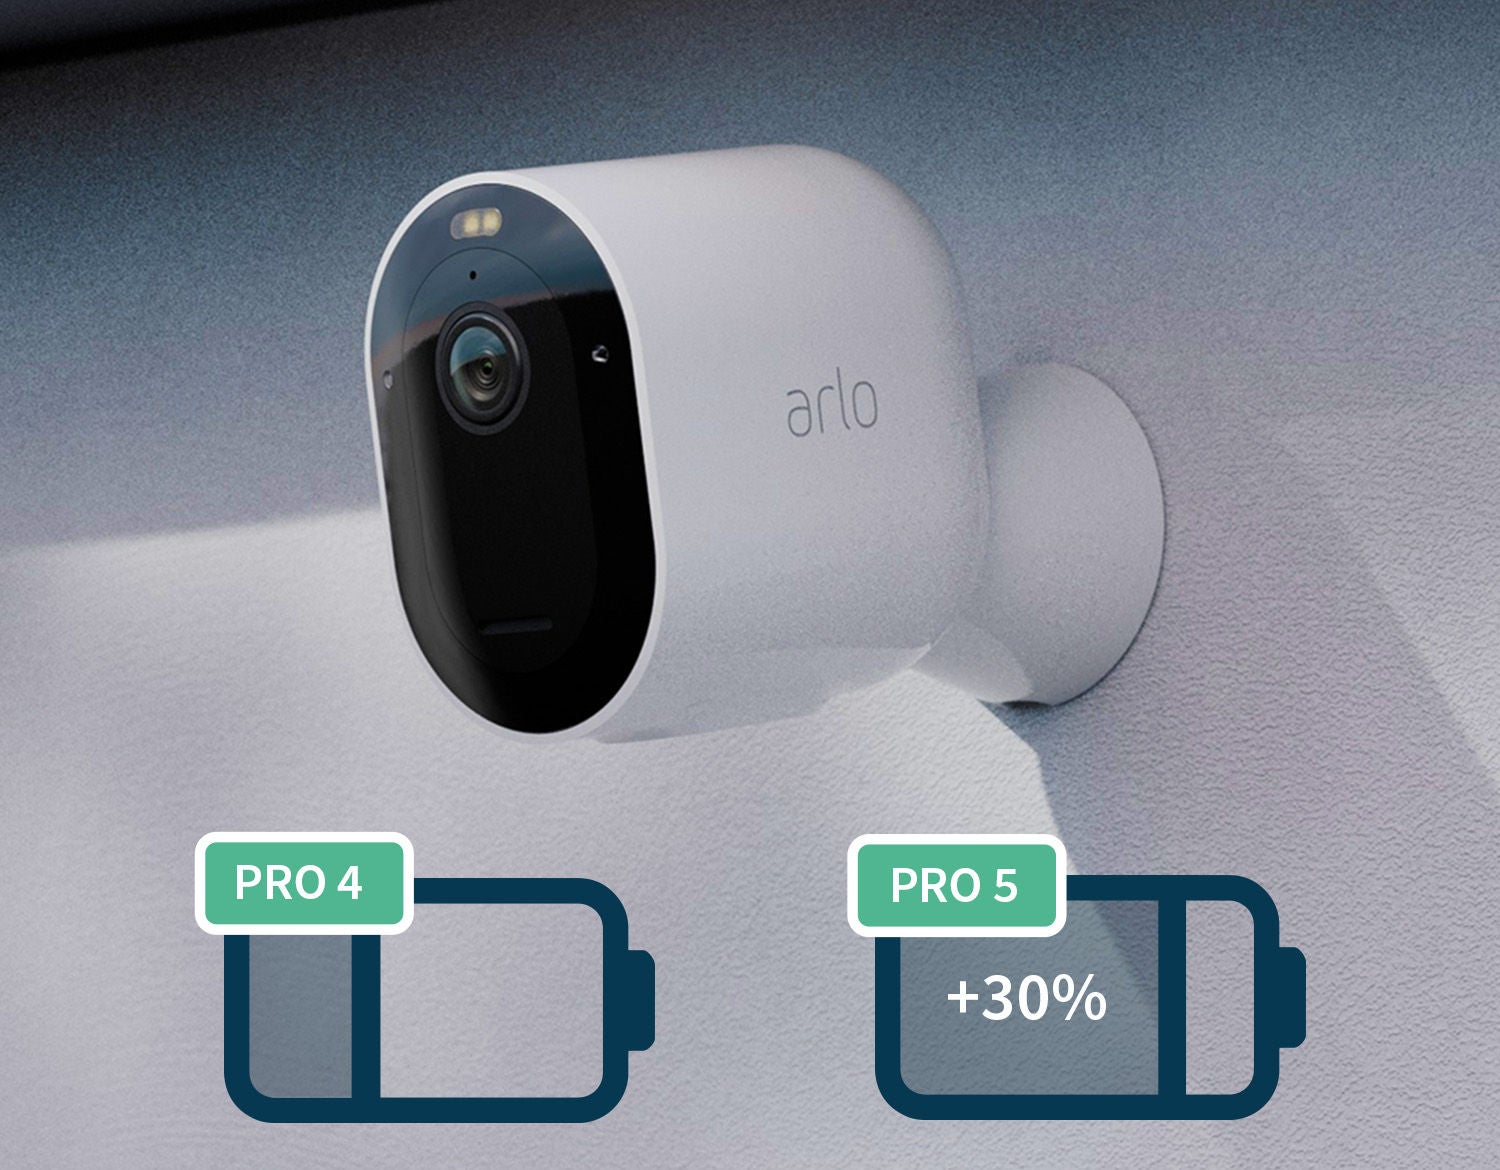  Porównanie baterii pomiędzy kamerami bezpieczeństwa Arlo Pro 4 i Pro 5, przy czym czas pracy na baterii w przypadku Pro 5 wynosi +30%.